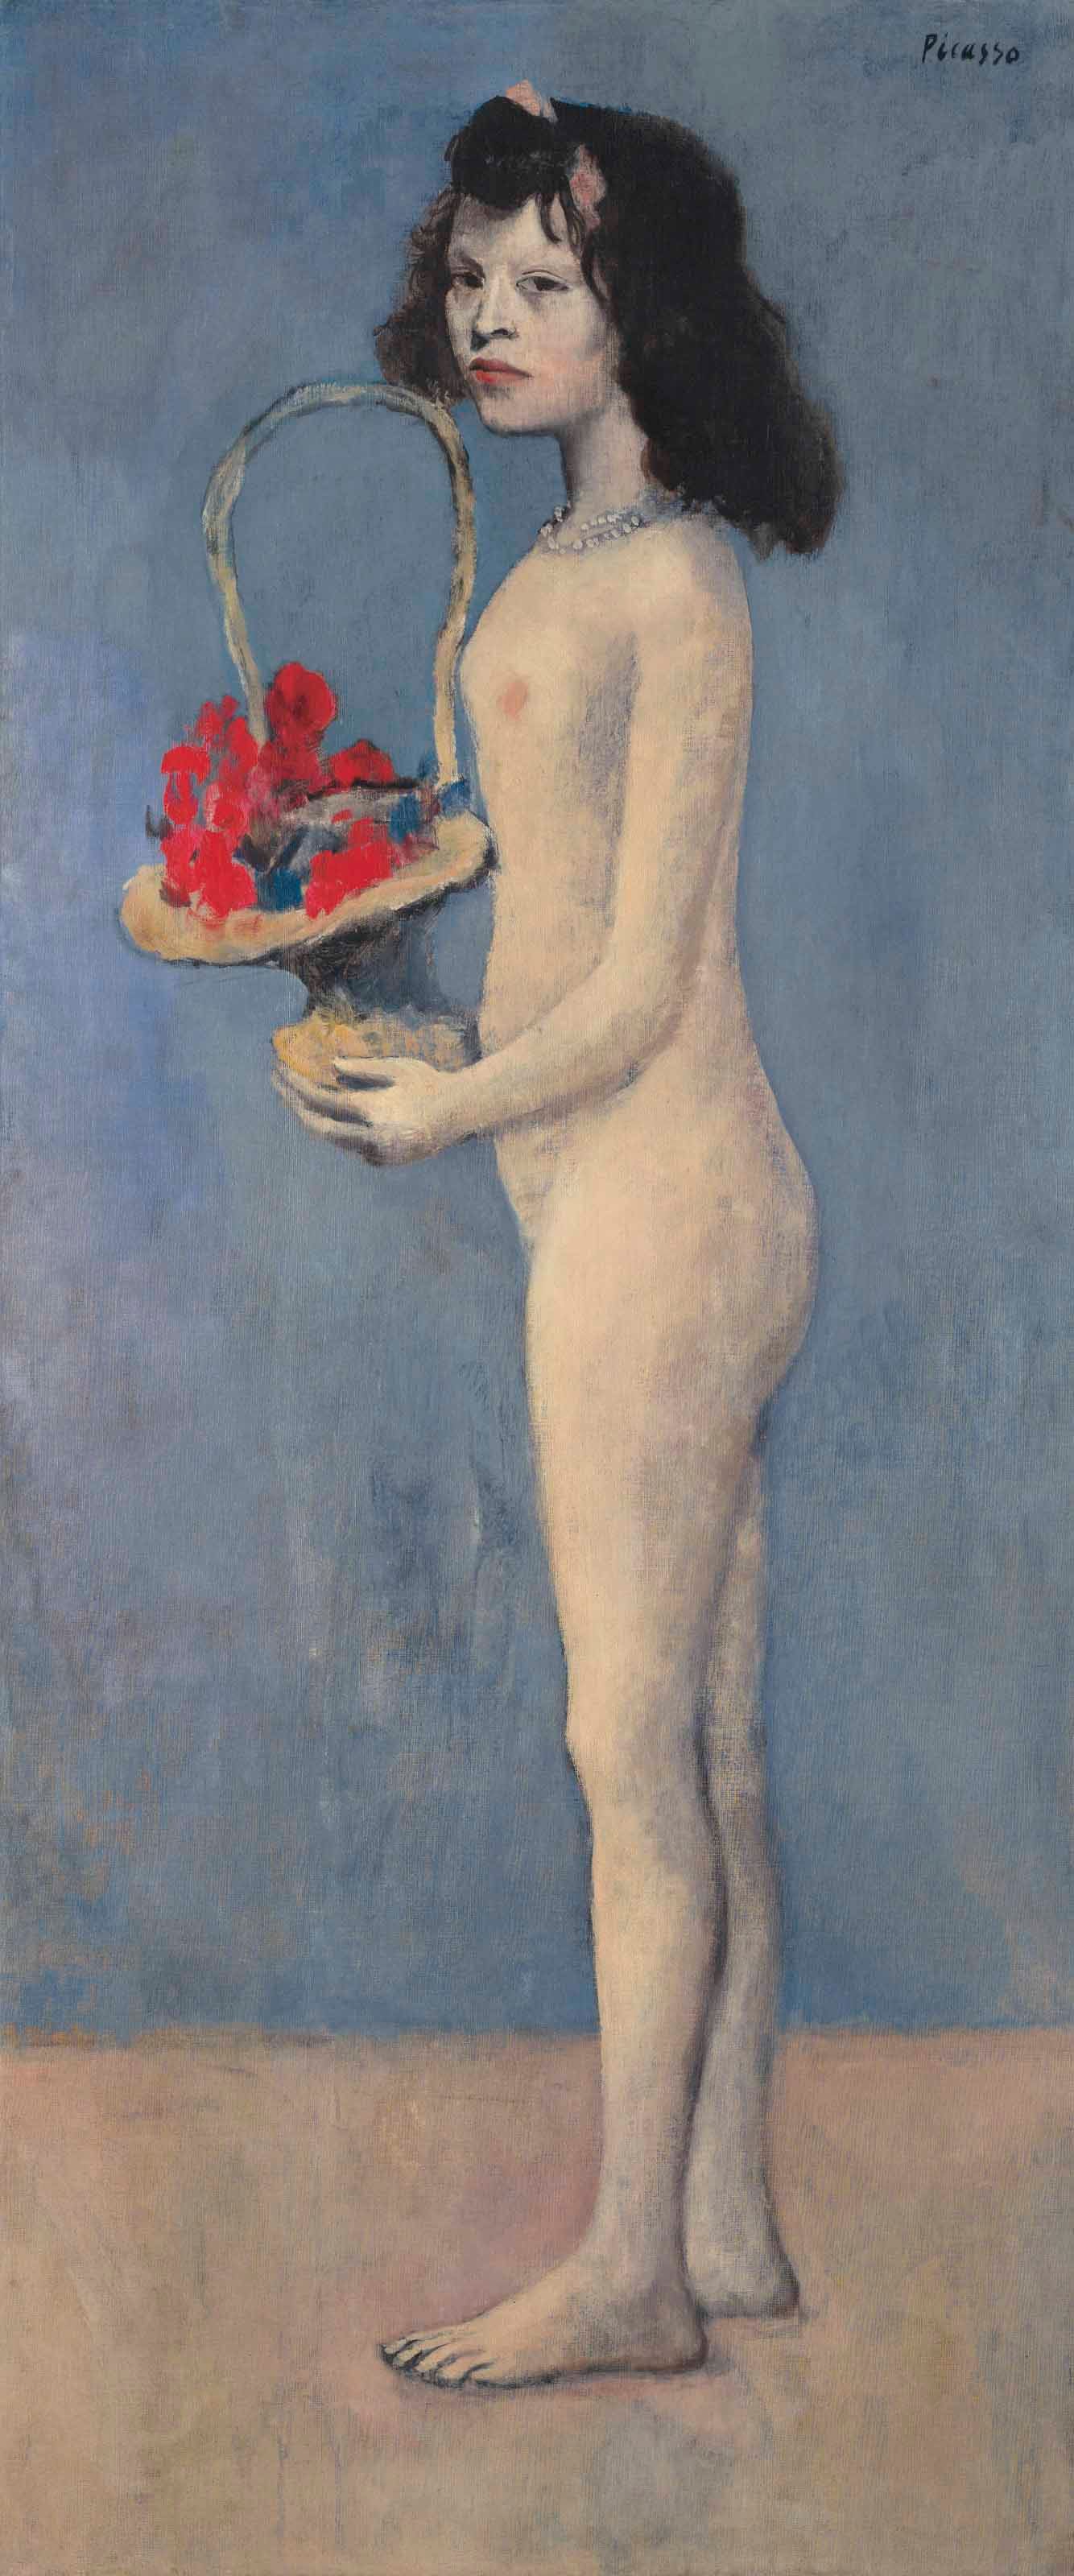 Pablo Picasso, “Fillette à la corbeille fleurie” (1905). 